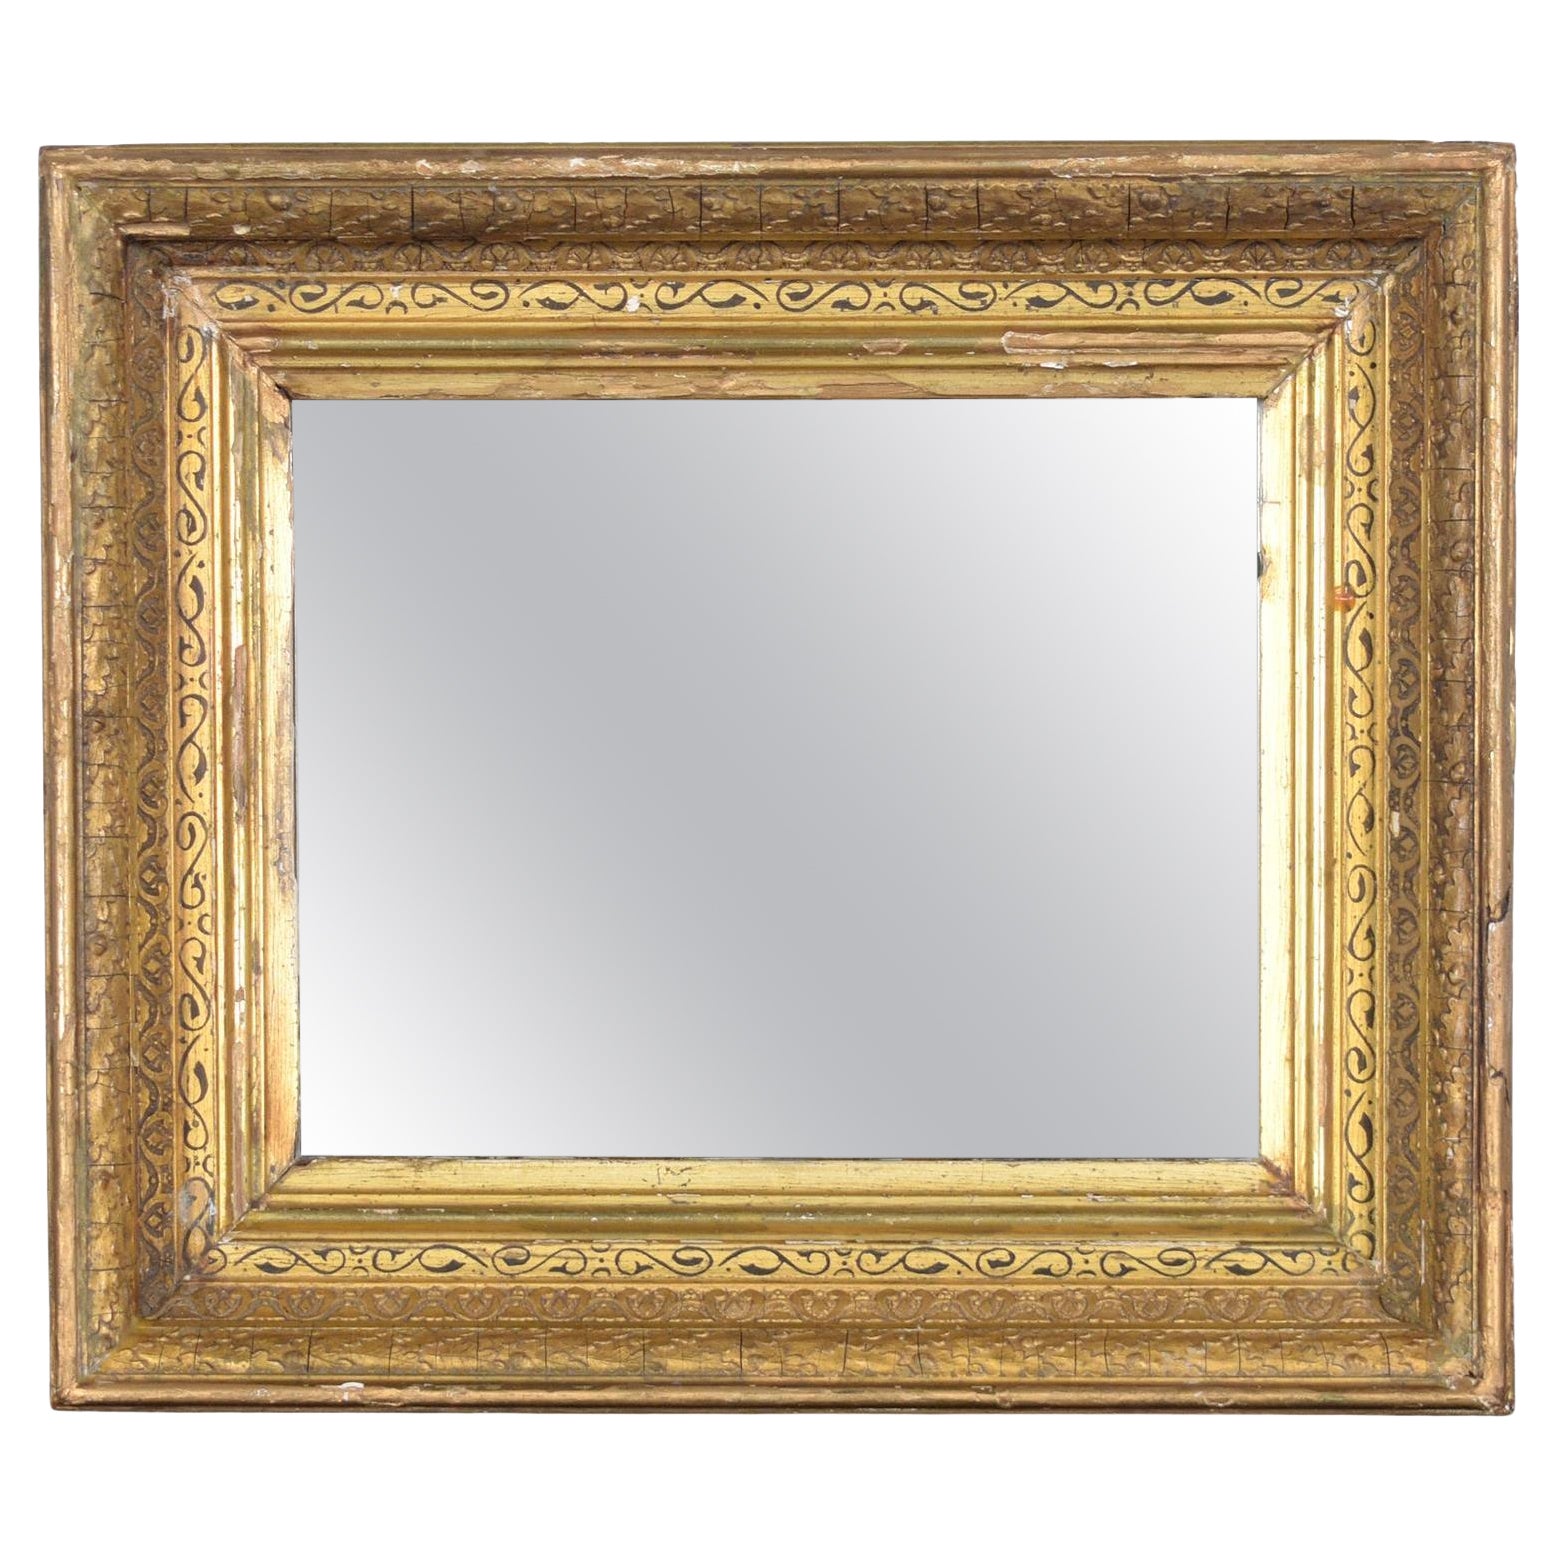 Französischer Antique Mirror aus dem 19. Jahrhundert: Restaurierte Eleganz mit wasservergoldeter Oberfläche